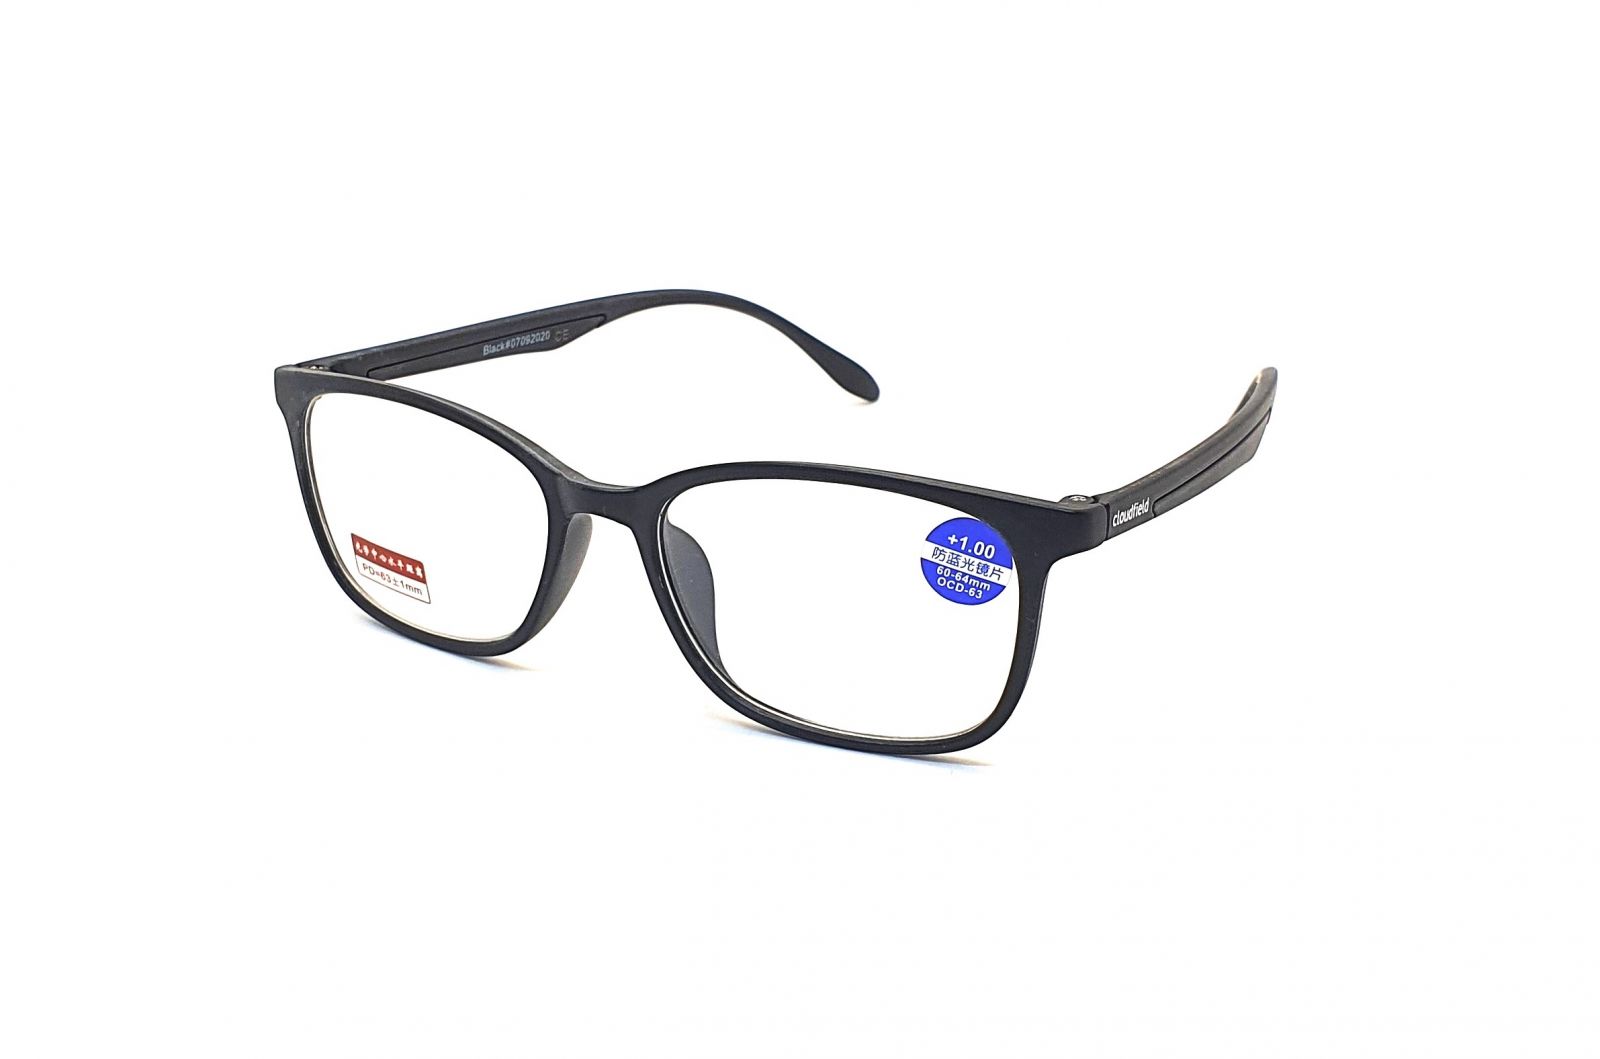 Dioptrické brýle 2020 / +1,00 s antireflexní vrstvou